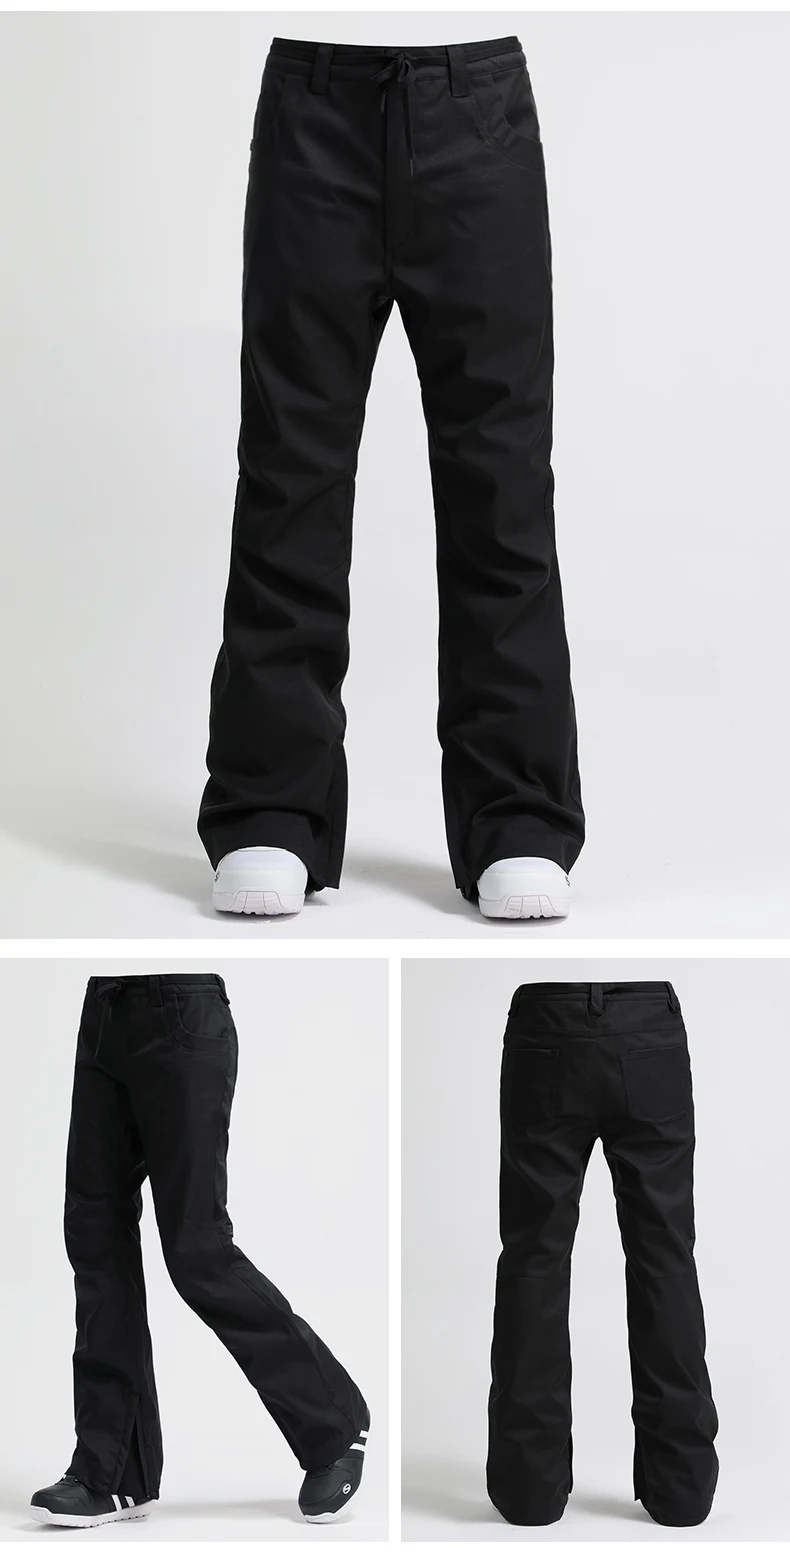 GSOU зимние штаны для сноуборда женские водонепроницаемые ветрозащитные дышащие лыжные сноубордические брюки спортивные штаны для улицы